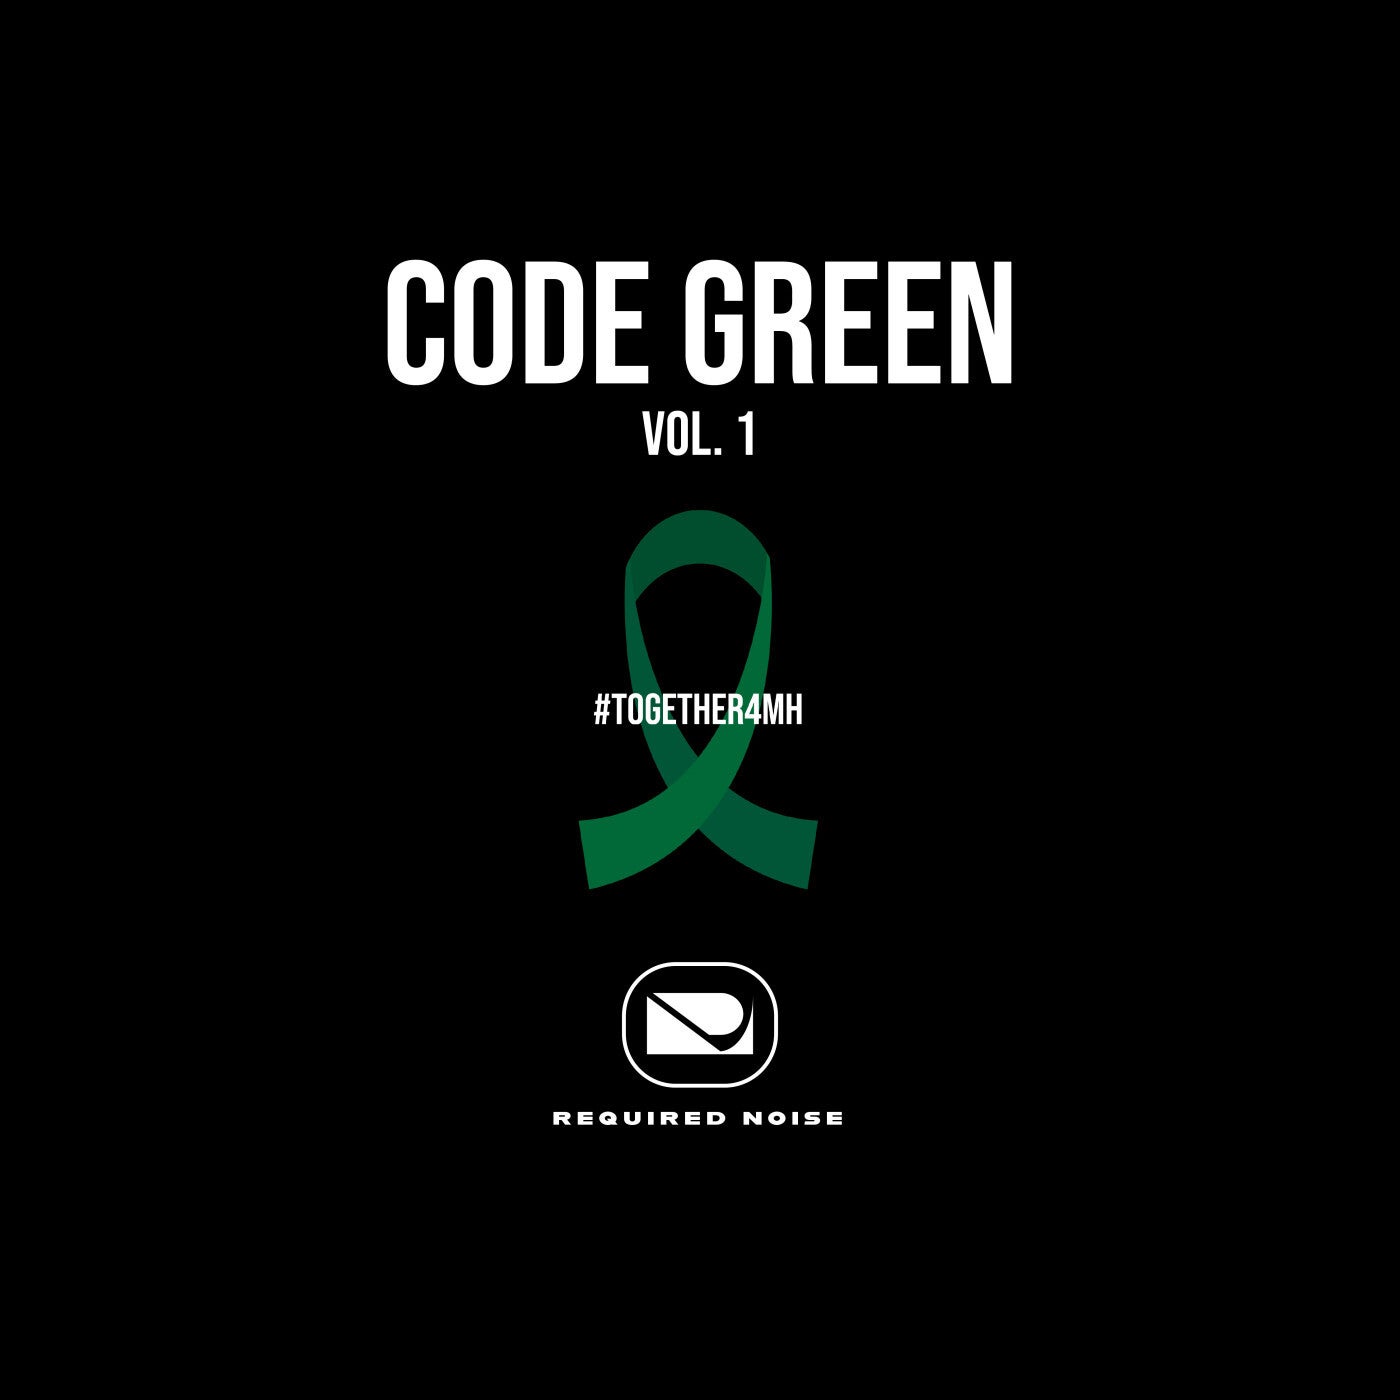 Code Green Vol. 1